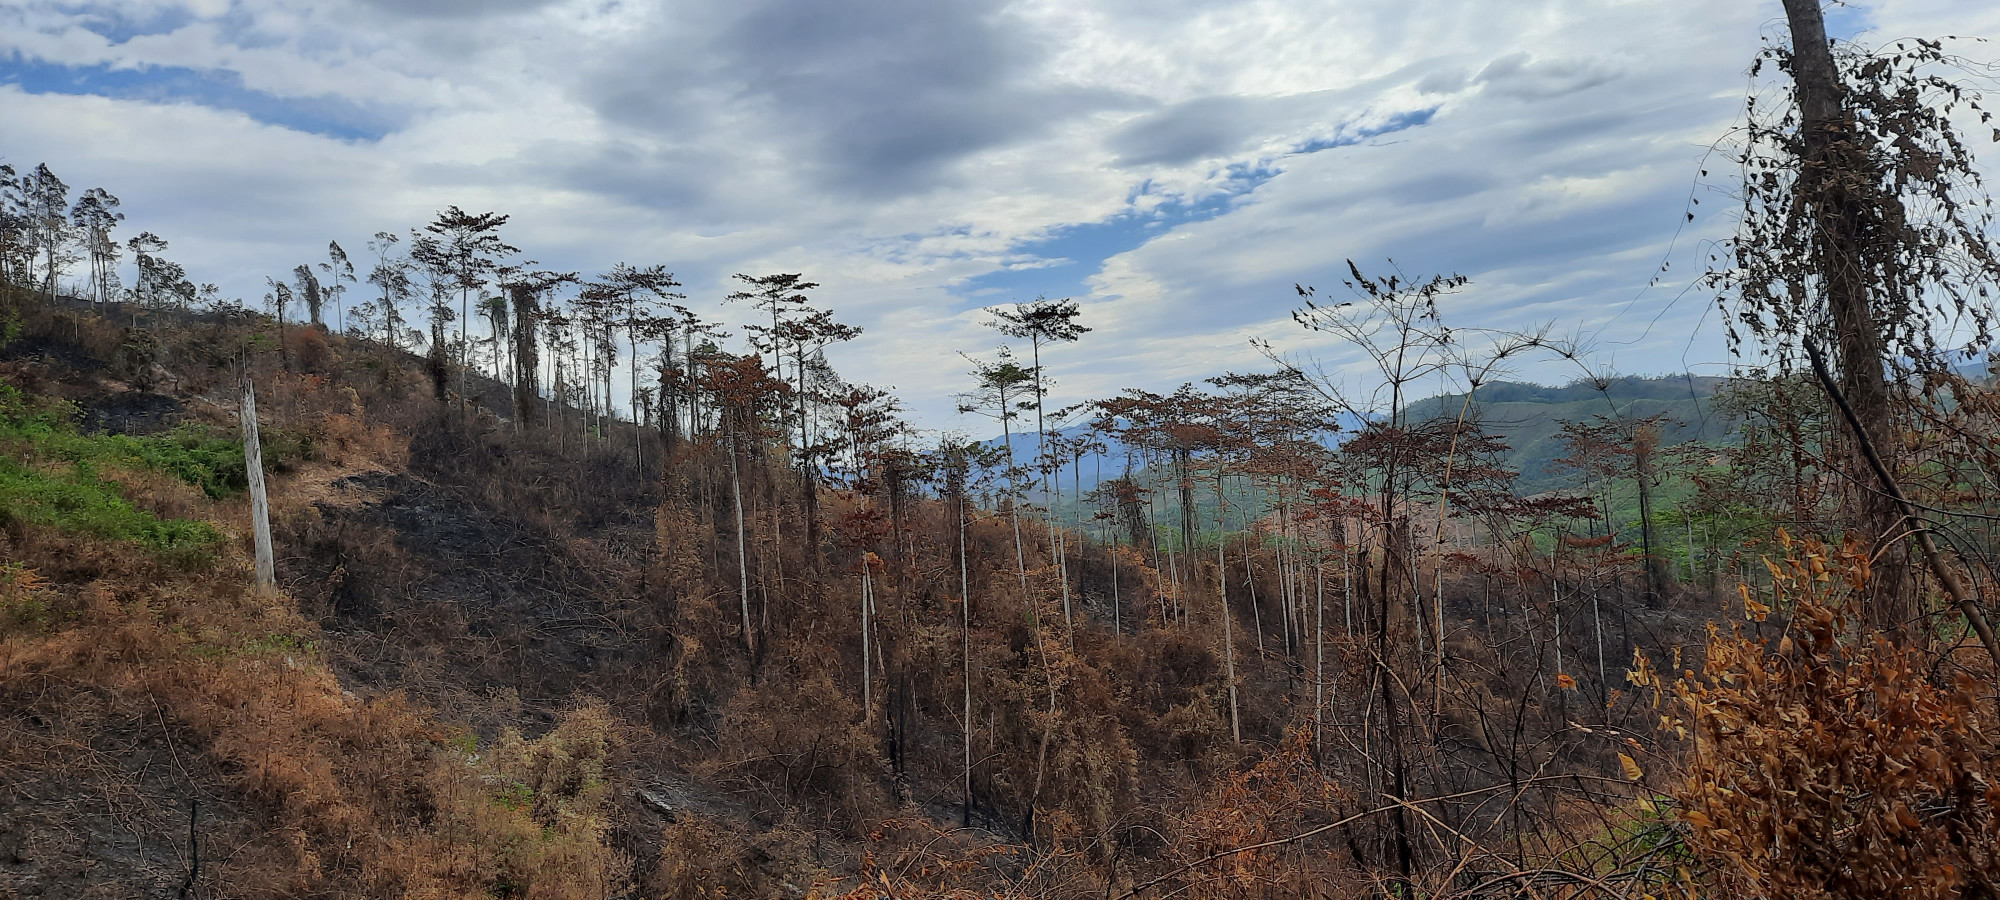 Phương thức chủ yếu của lâm tặc là hợp đồng với một số người dân địa phương tiến hành đốt cháy, rồi từ đó khai thác những cây gỗ đã bị chết